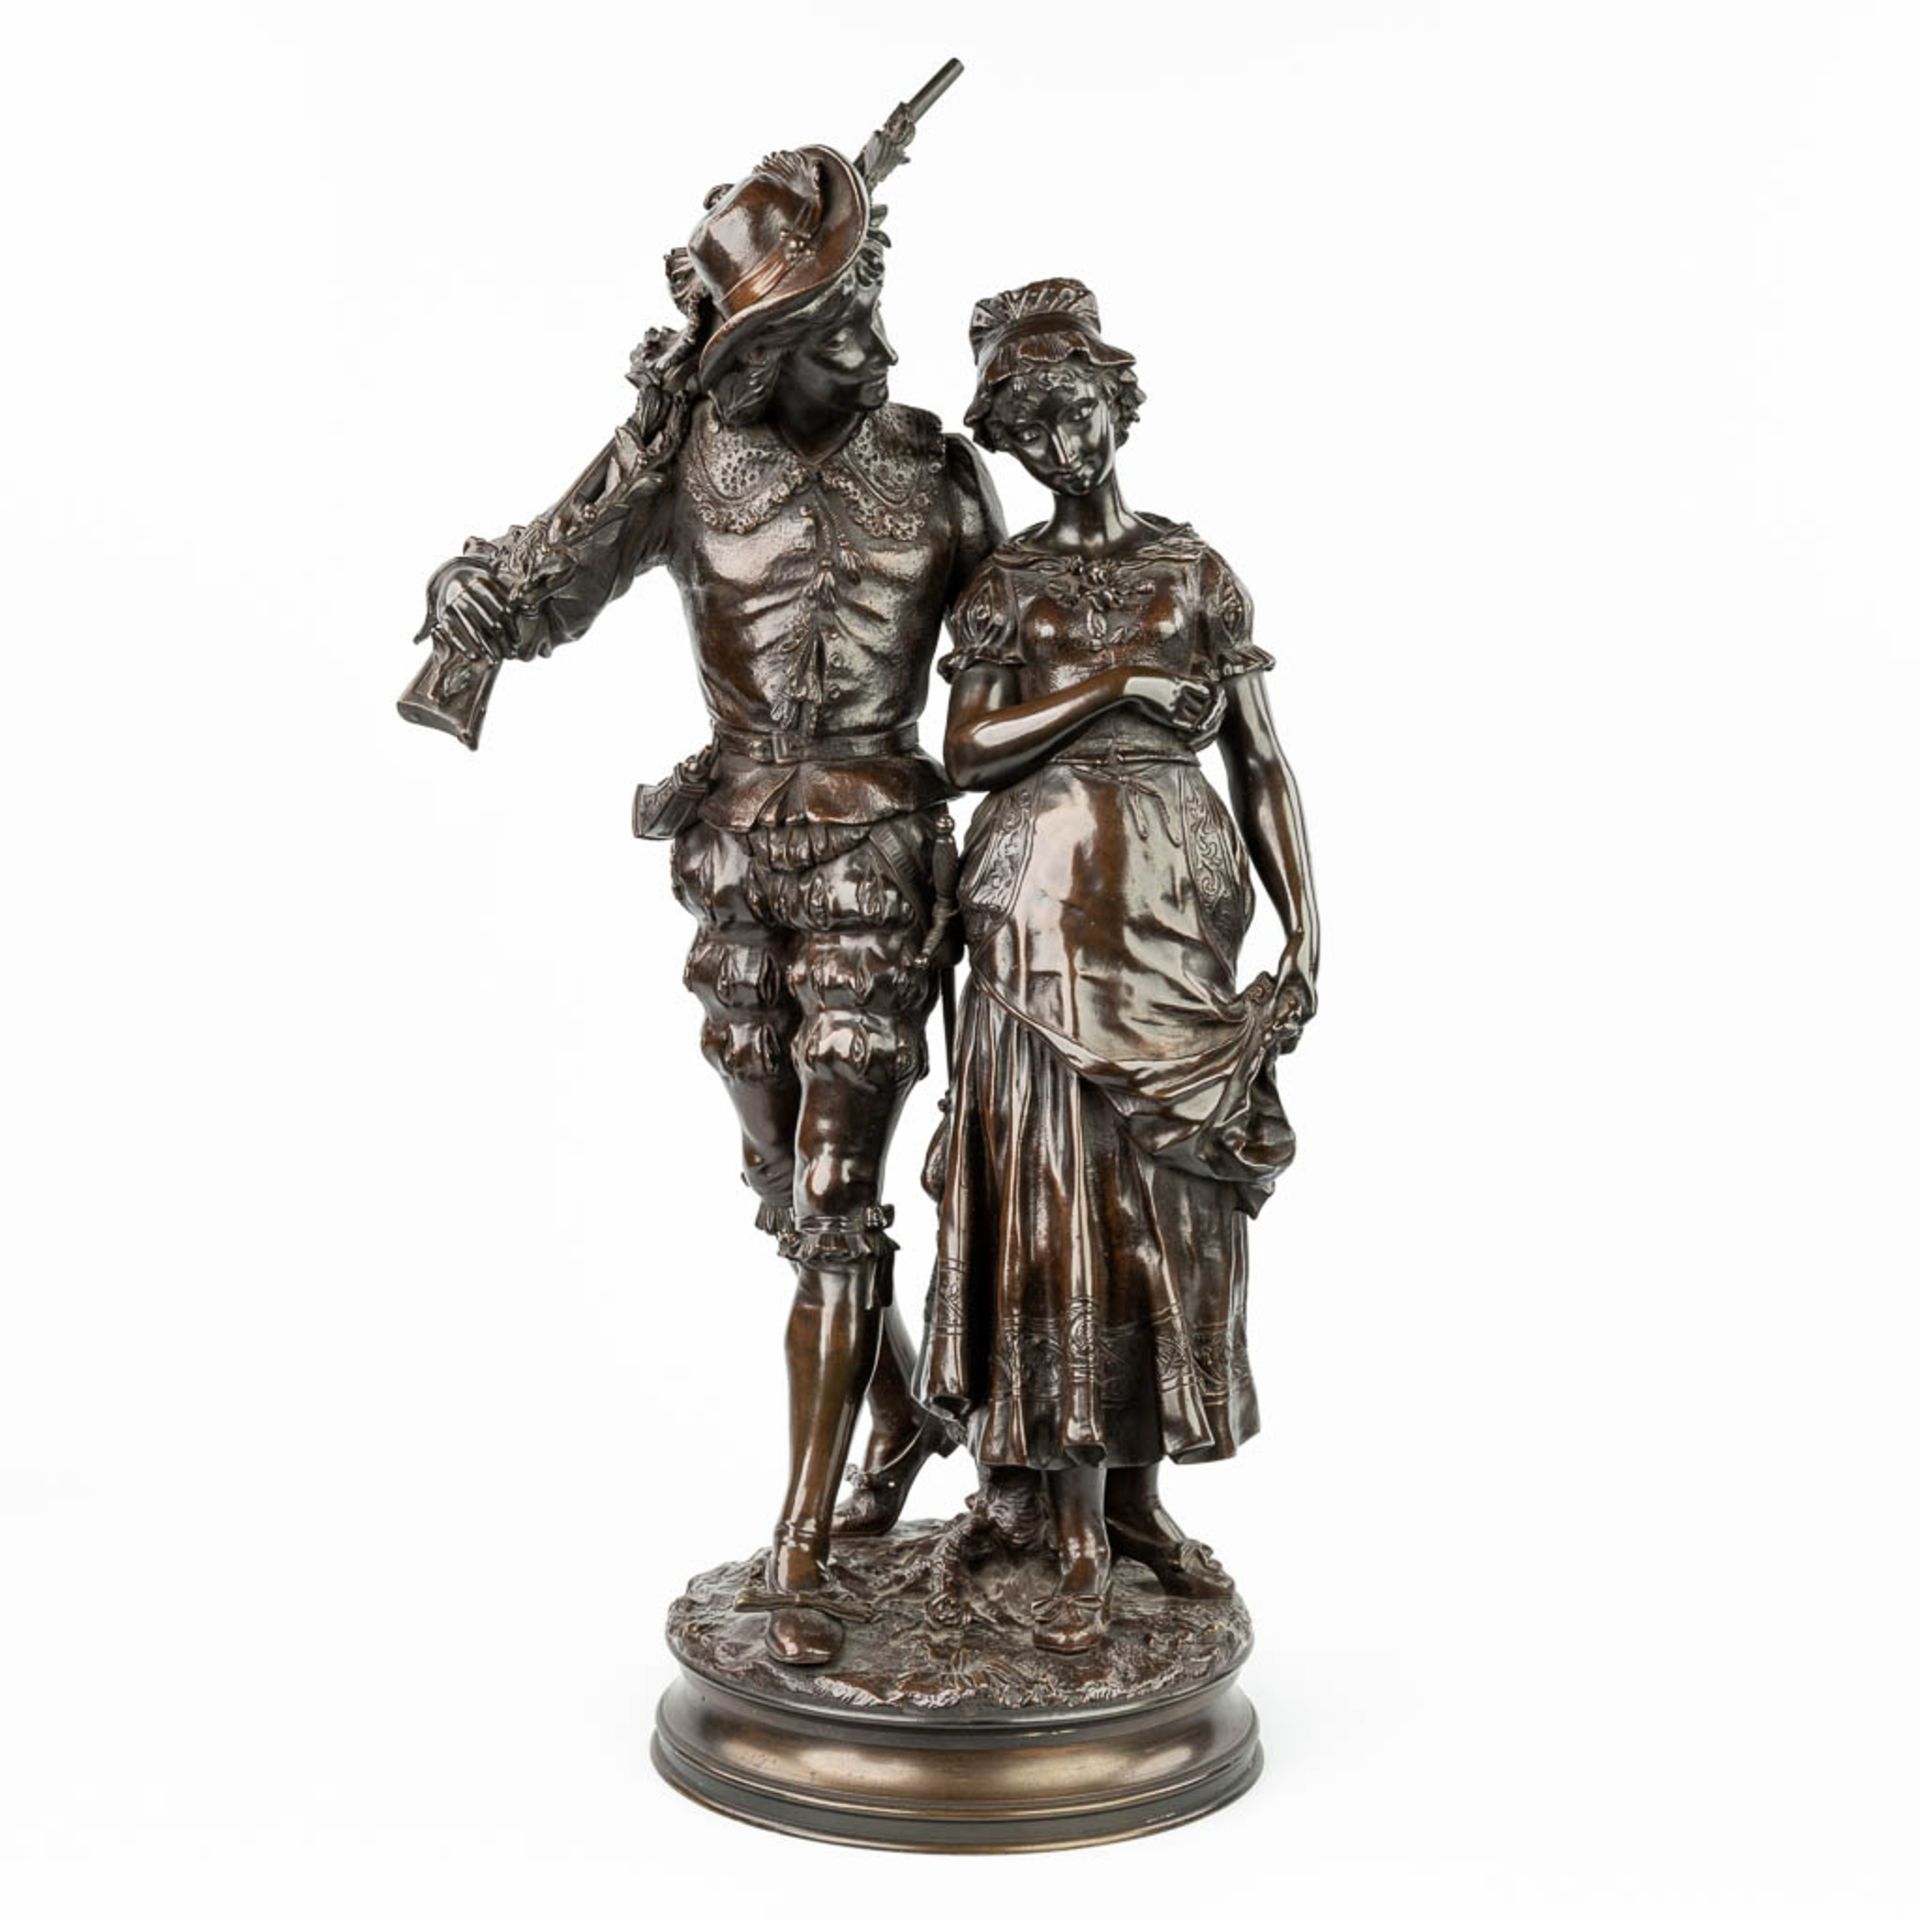 Adrien Etienne GAUDEZ (1845-1902) 'Retour de Chasse' a bronze statue on a revolving base. (H:72cm) - Image 4 of 15